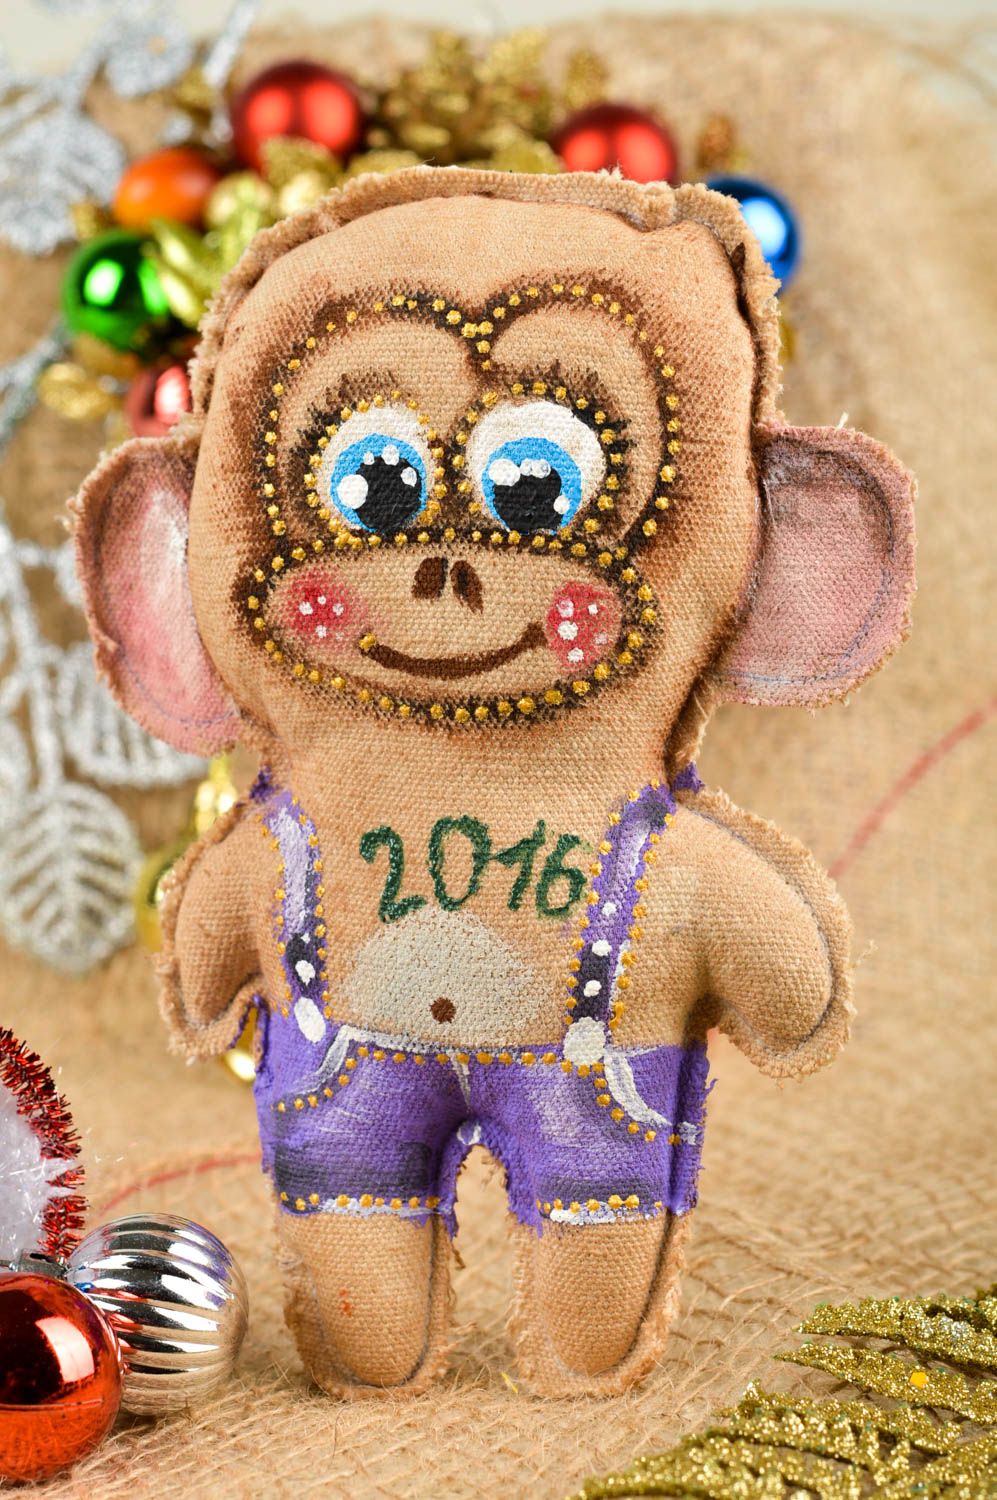 Handmade Stoff Kuscheltier Affe Geschenk Idee für Kinder Plüsch Affe schön foto 1